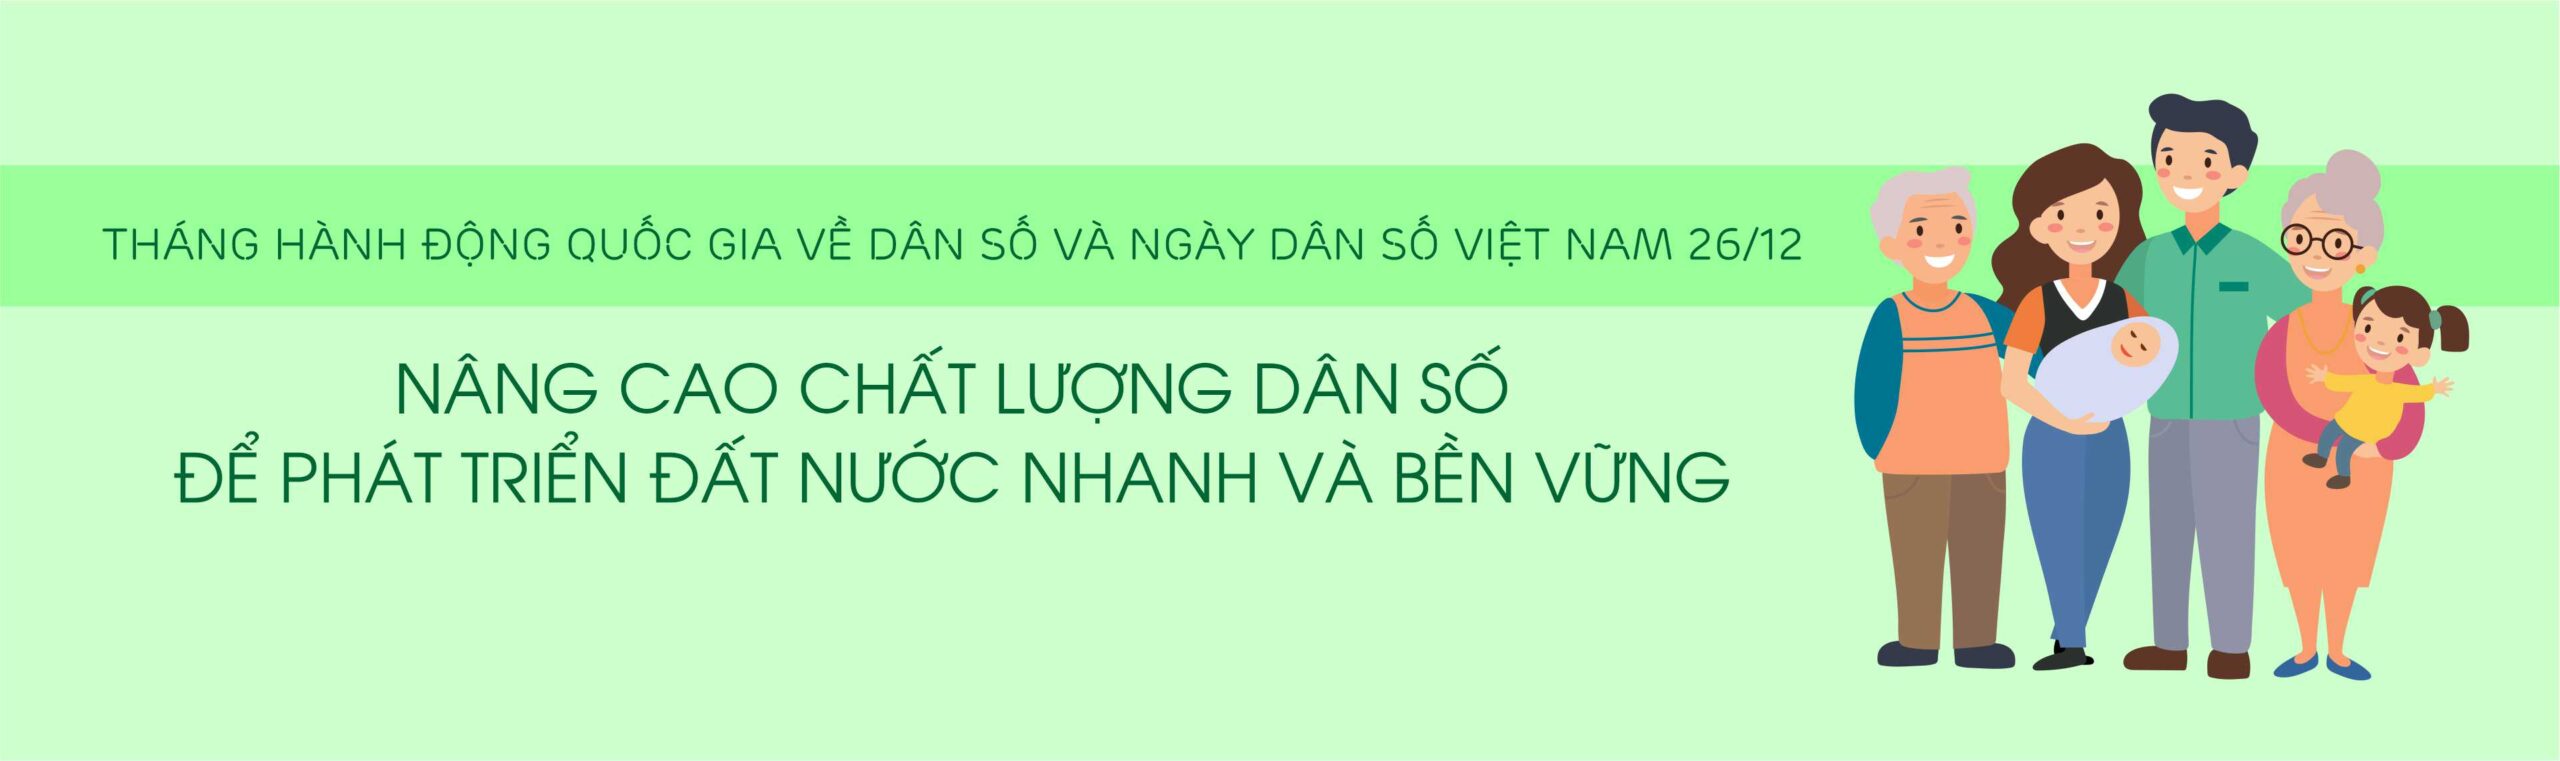 Hưởng ứng Tháng hành động quốc gia về Dân số, Ngày Dân số Việt Nam 26/12/2022